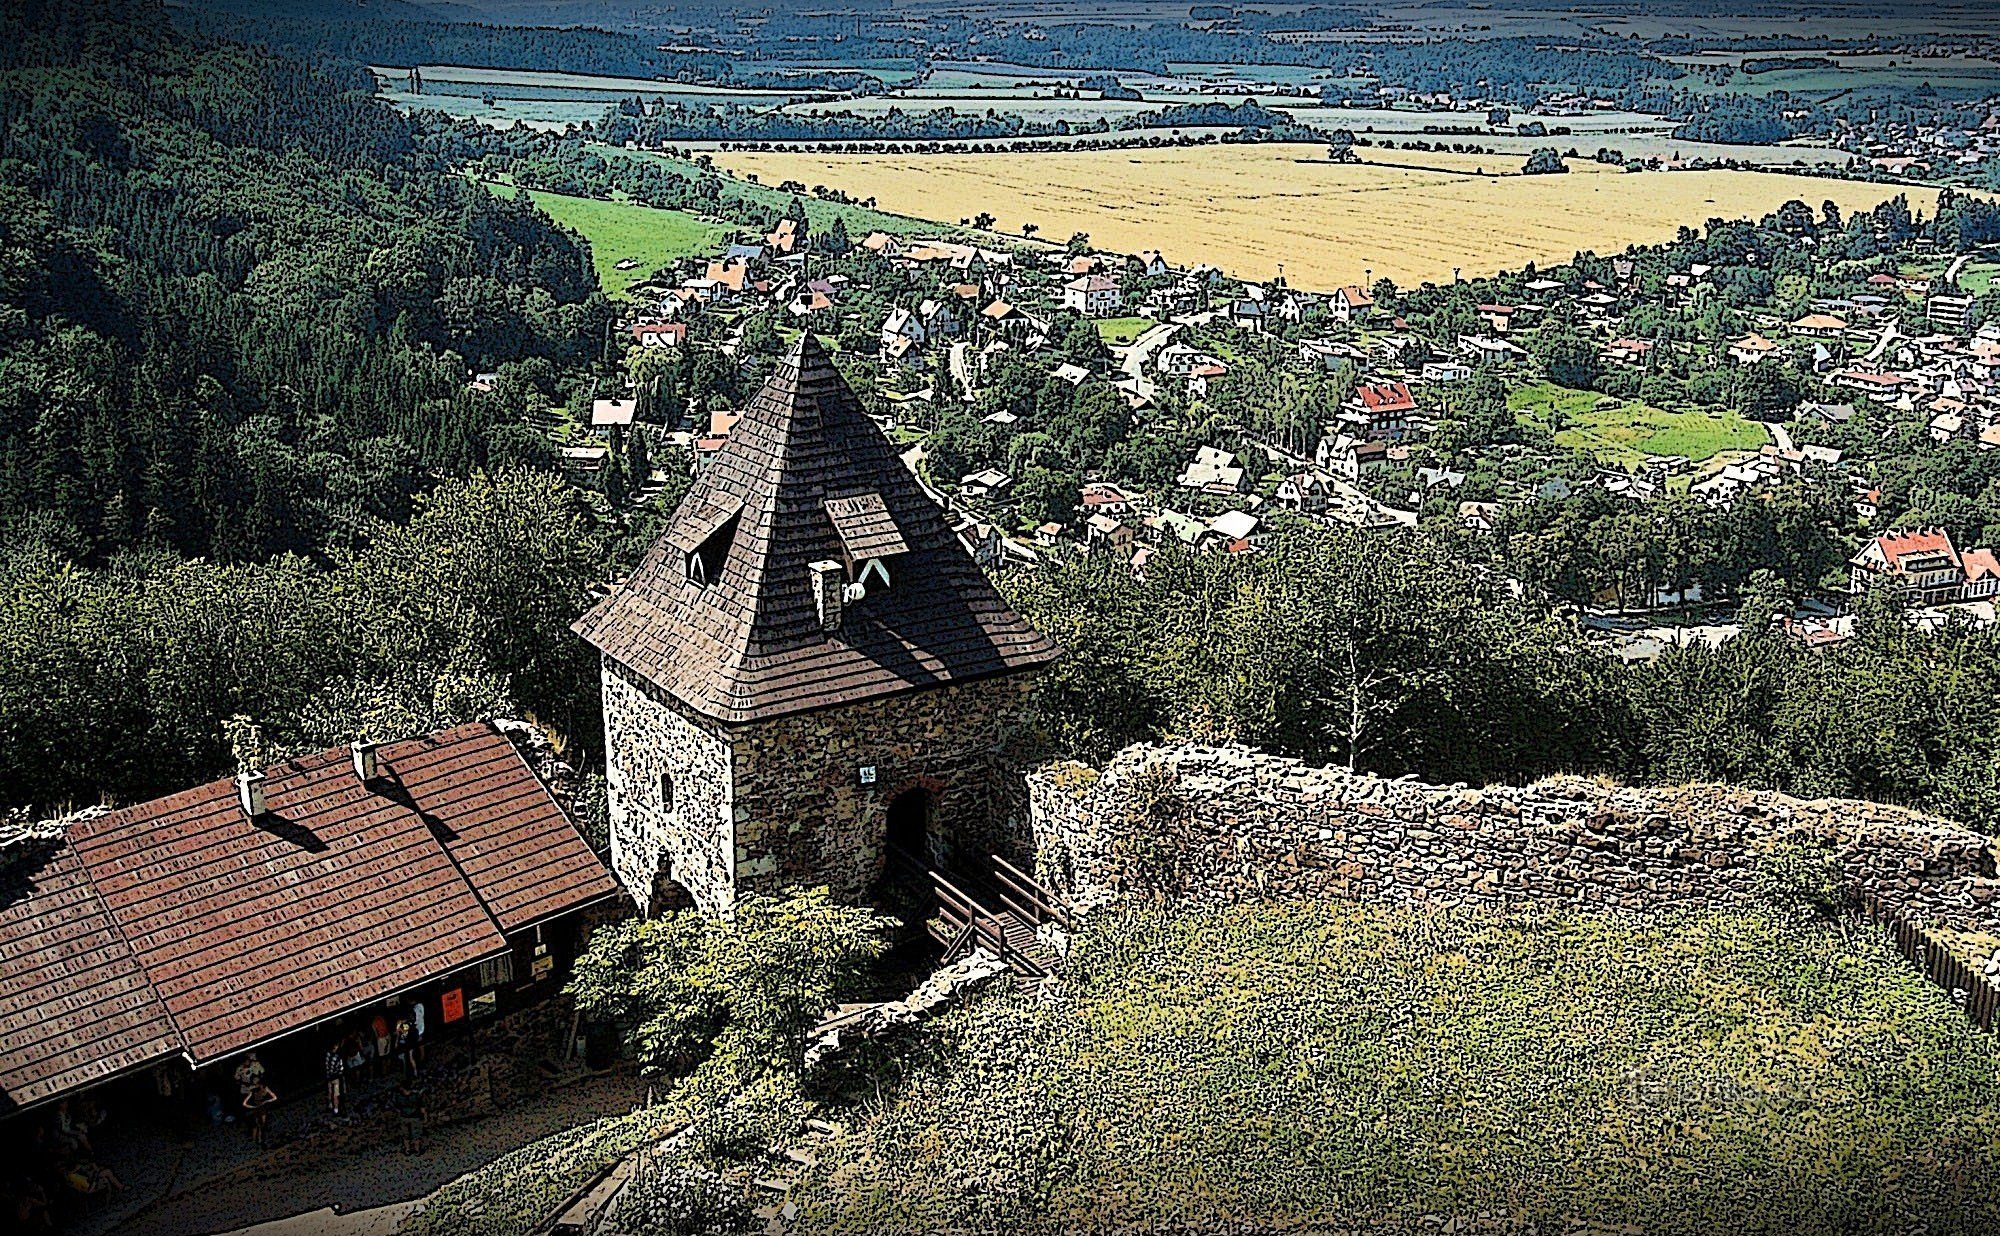 Tìm hiểu một chút lịch sử đến Lâu đài Potštejn